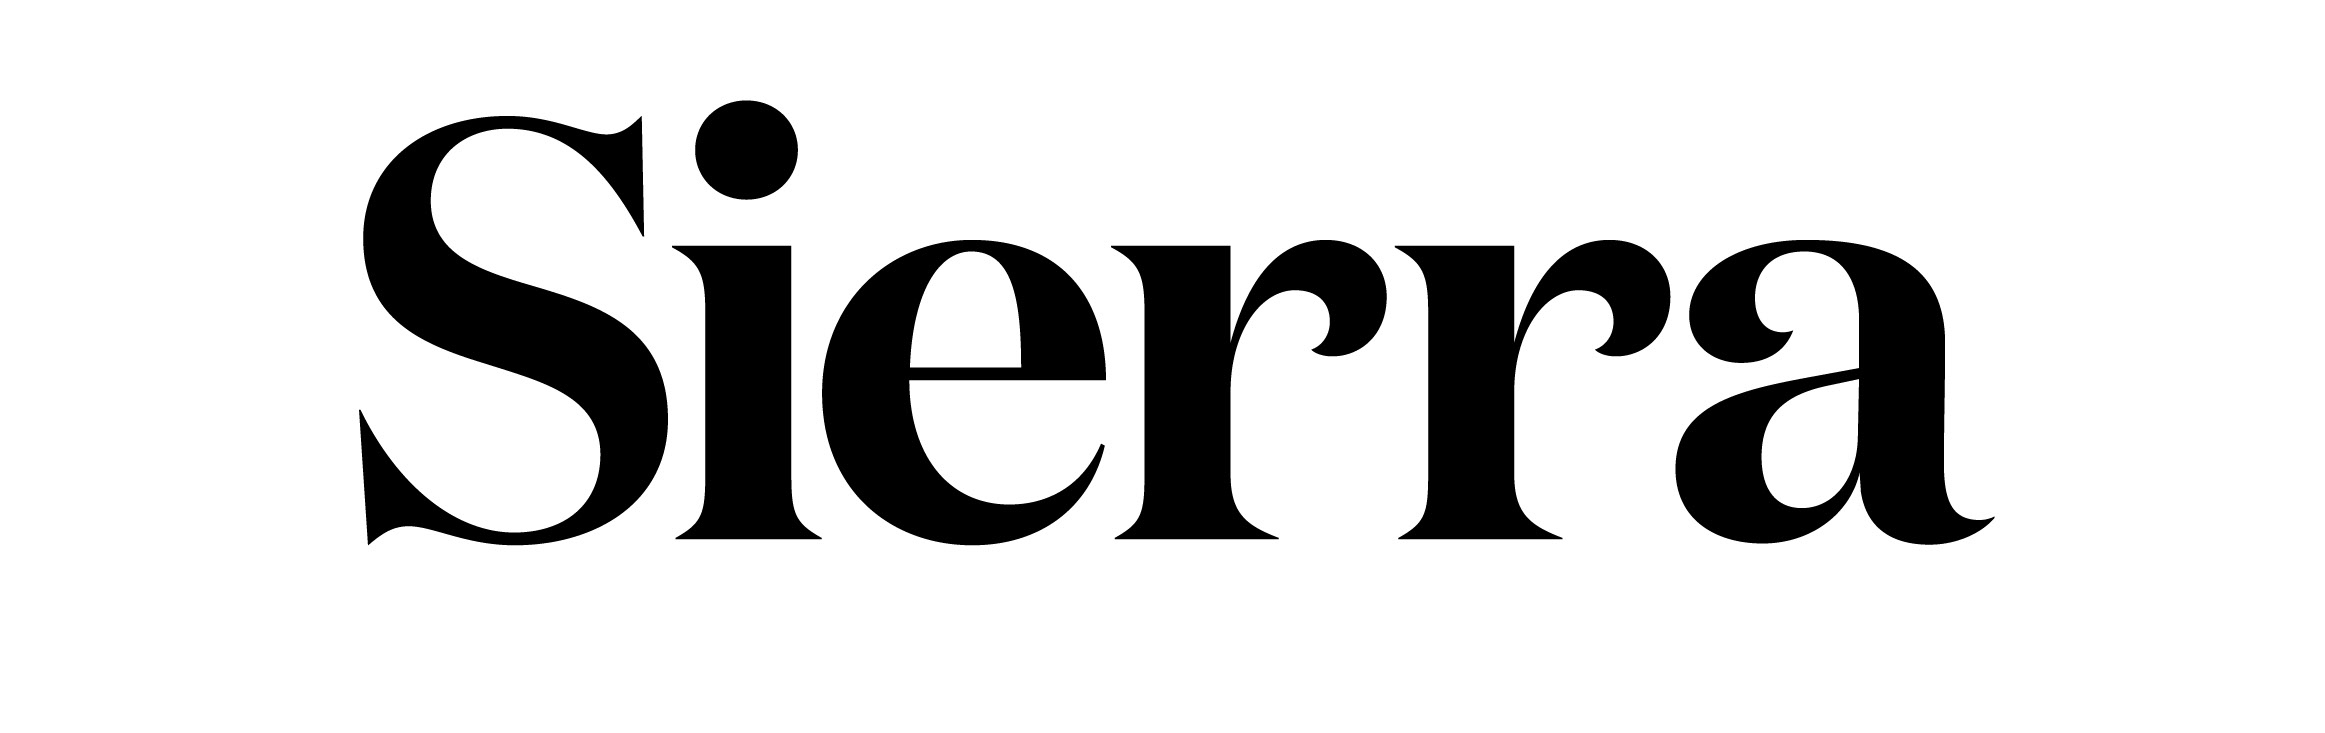 Sierra Magazine